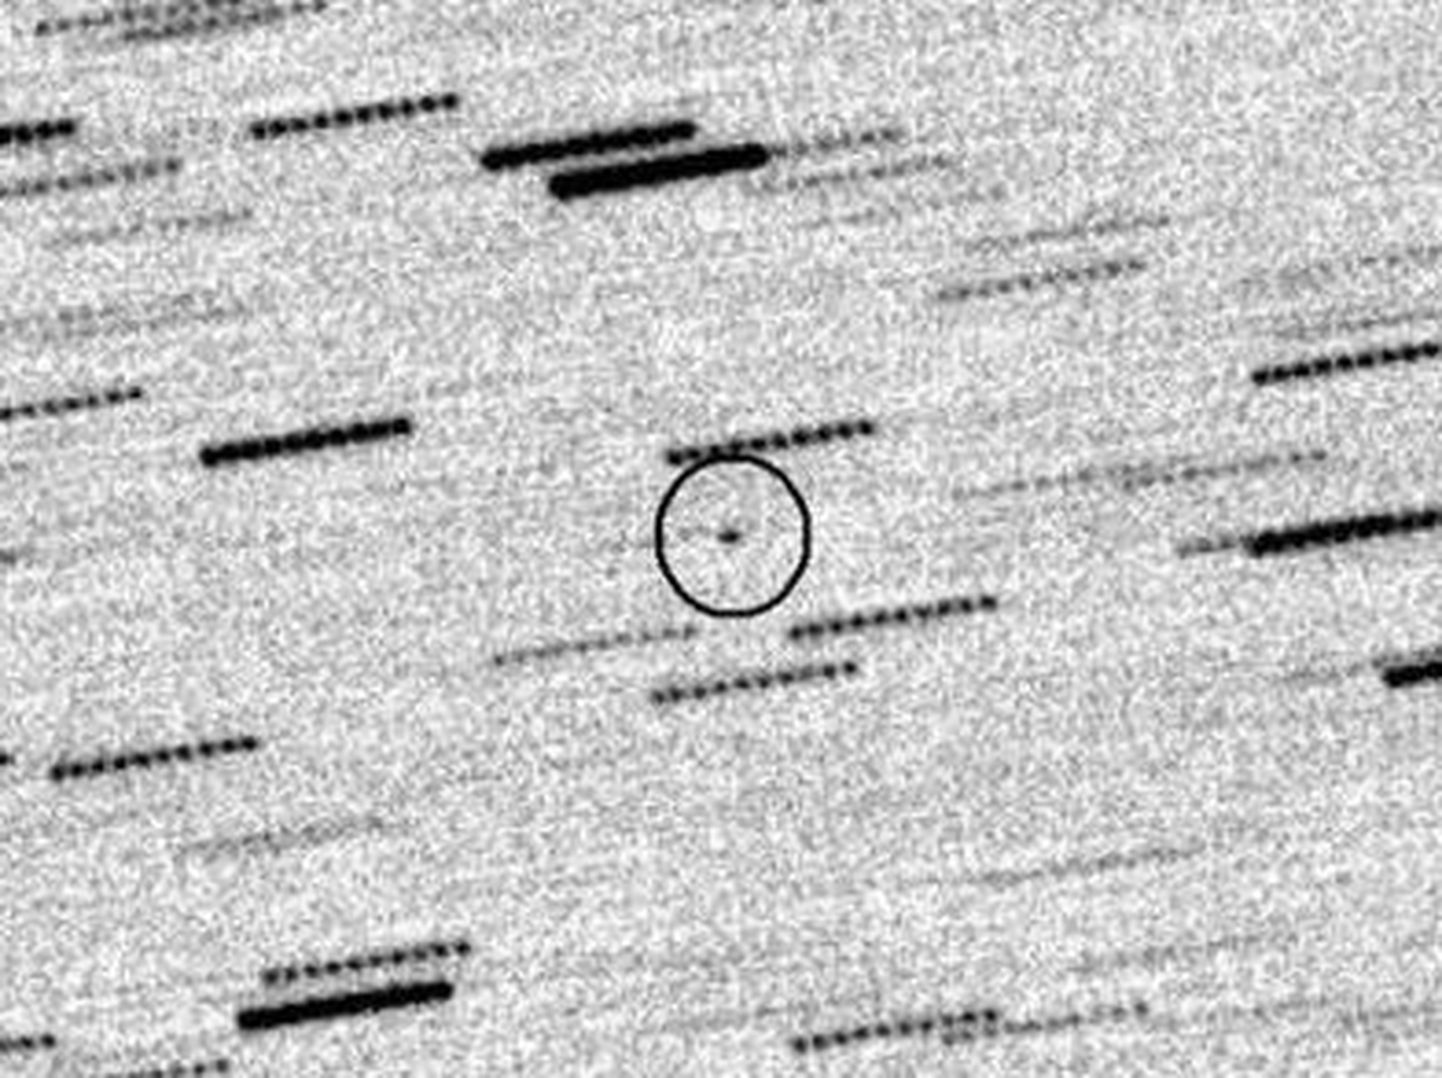 Astronoomid märkasid eile tundmatut objekti